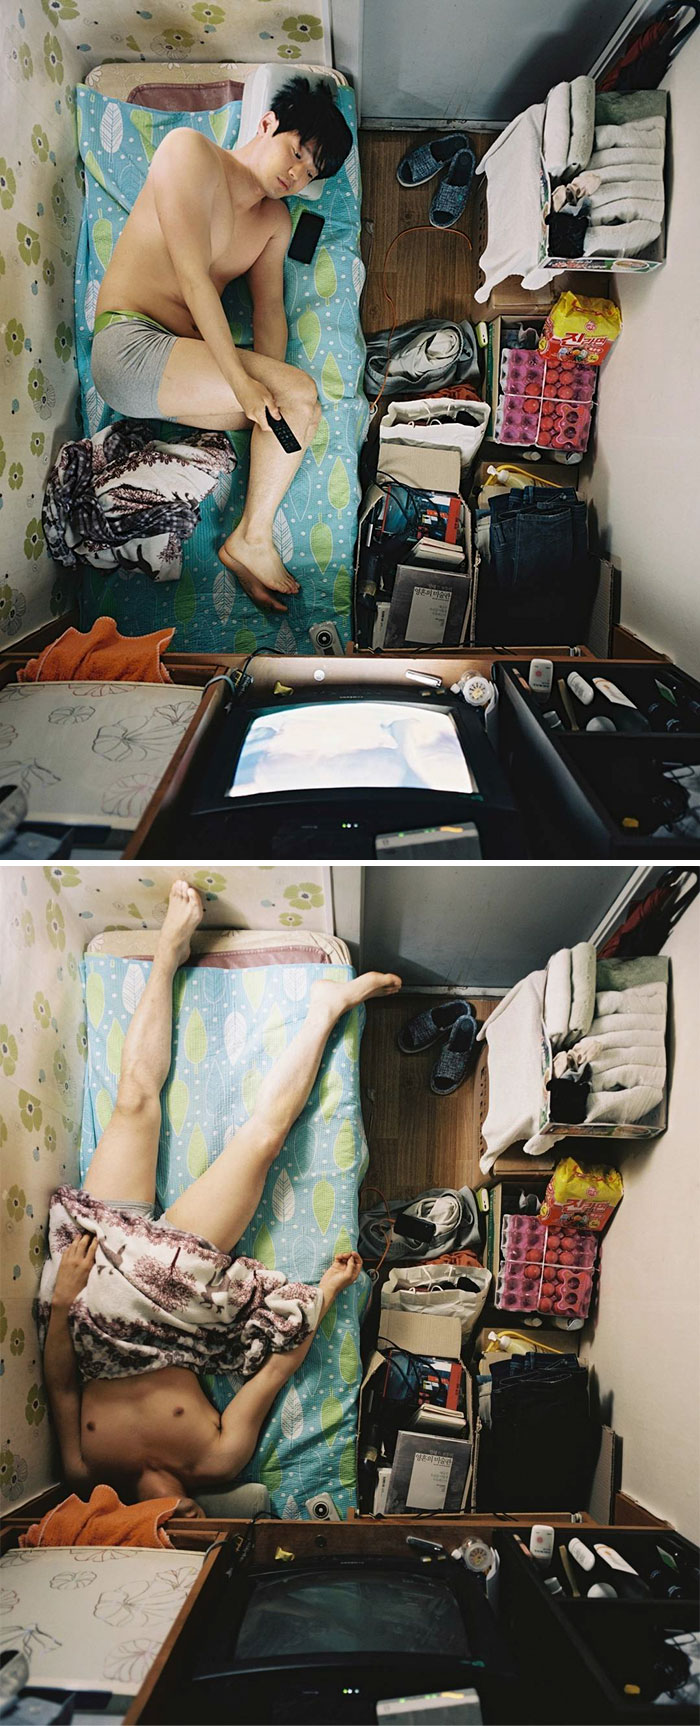 poor south korea living conditions goshiwon photography sim kyu dong 5de4d8836384c 700 30 zdjęć pokazujących, jak żyją ubodzy mieszkańcy Korei Południowej w swoich „goshitels”